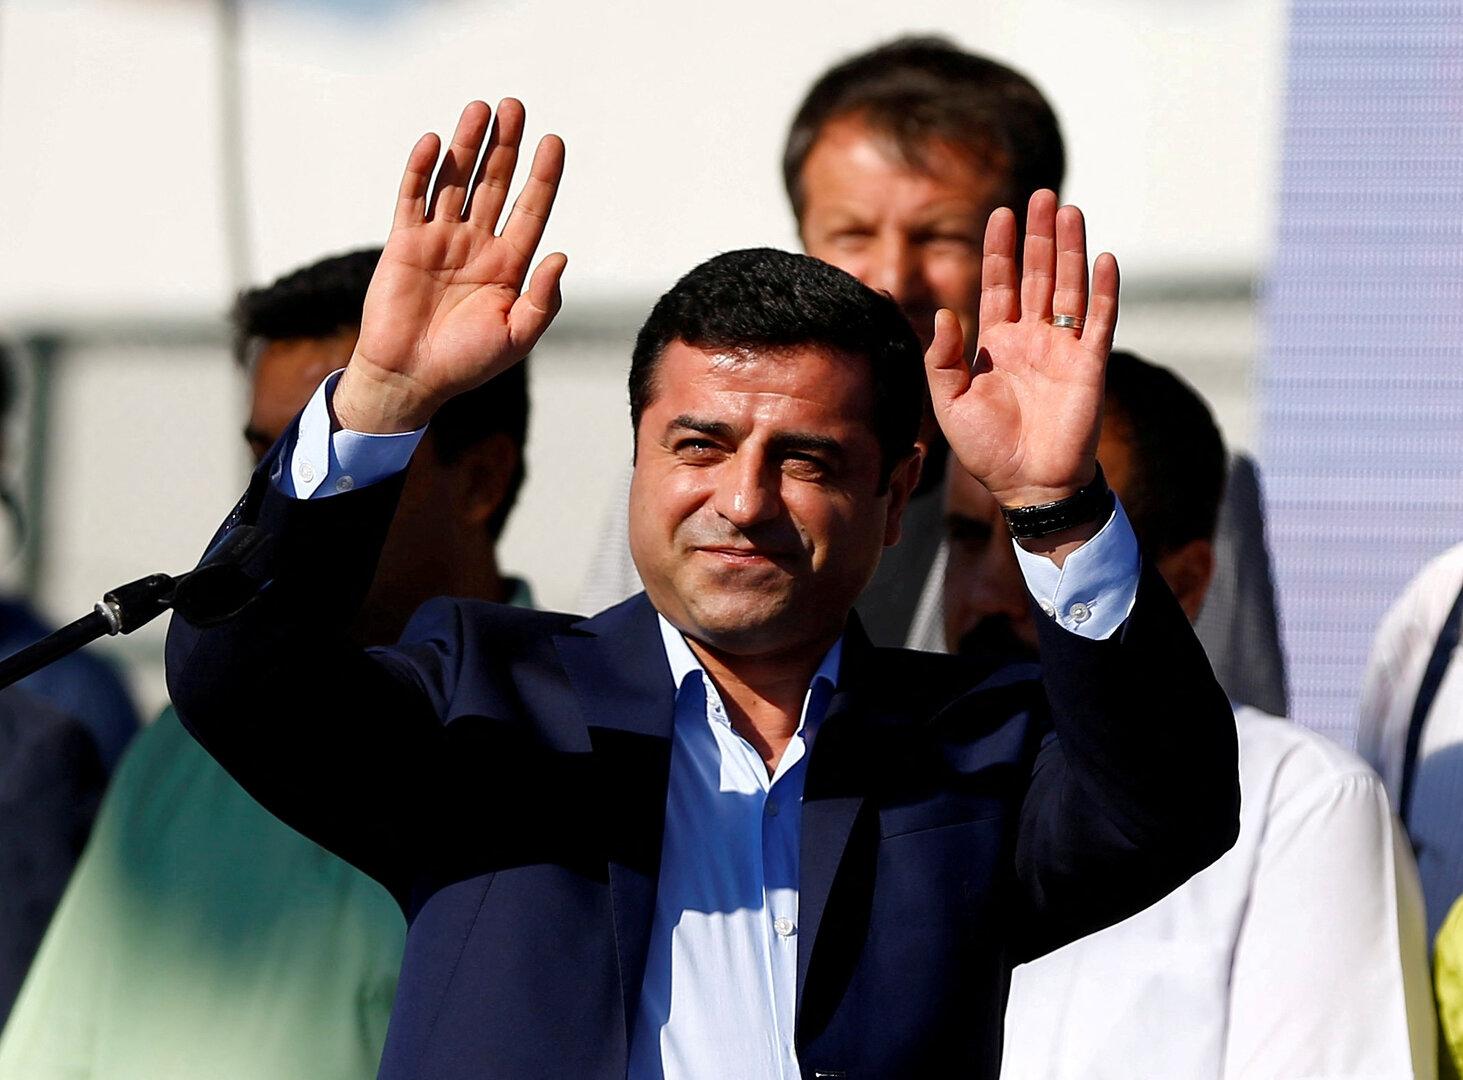 Türkisches Gericht verurteilt prokurdischen Politiker zu 42 Jahren Haft